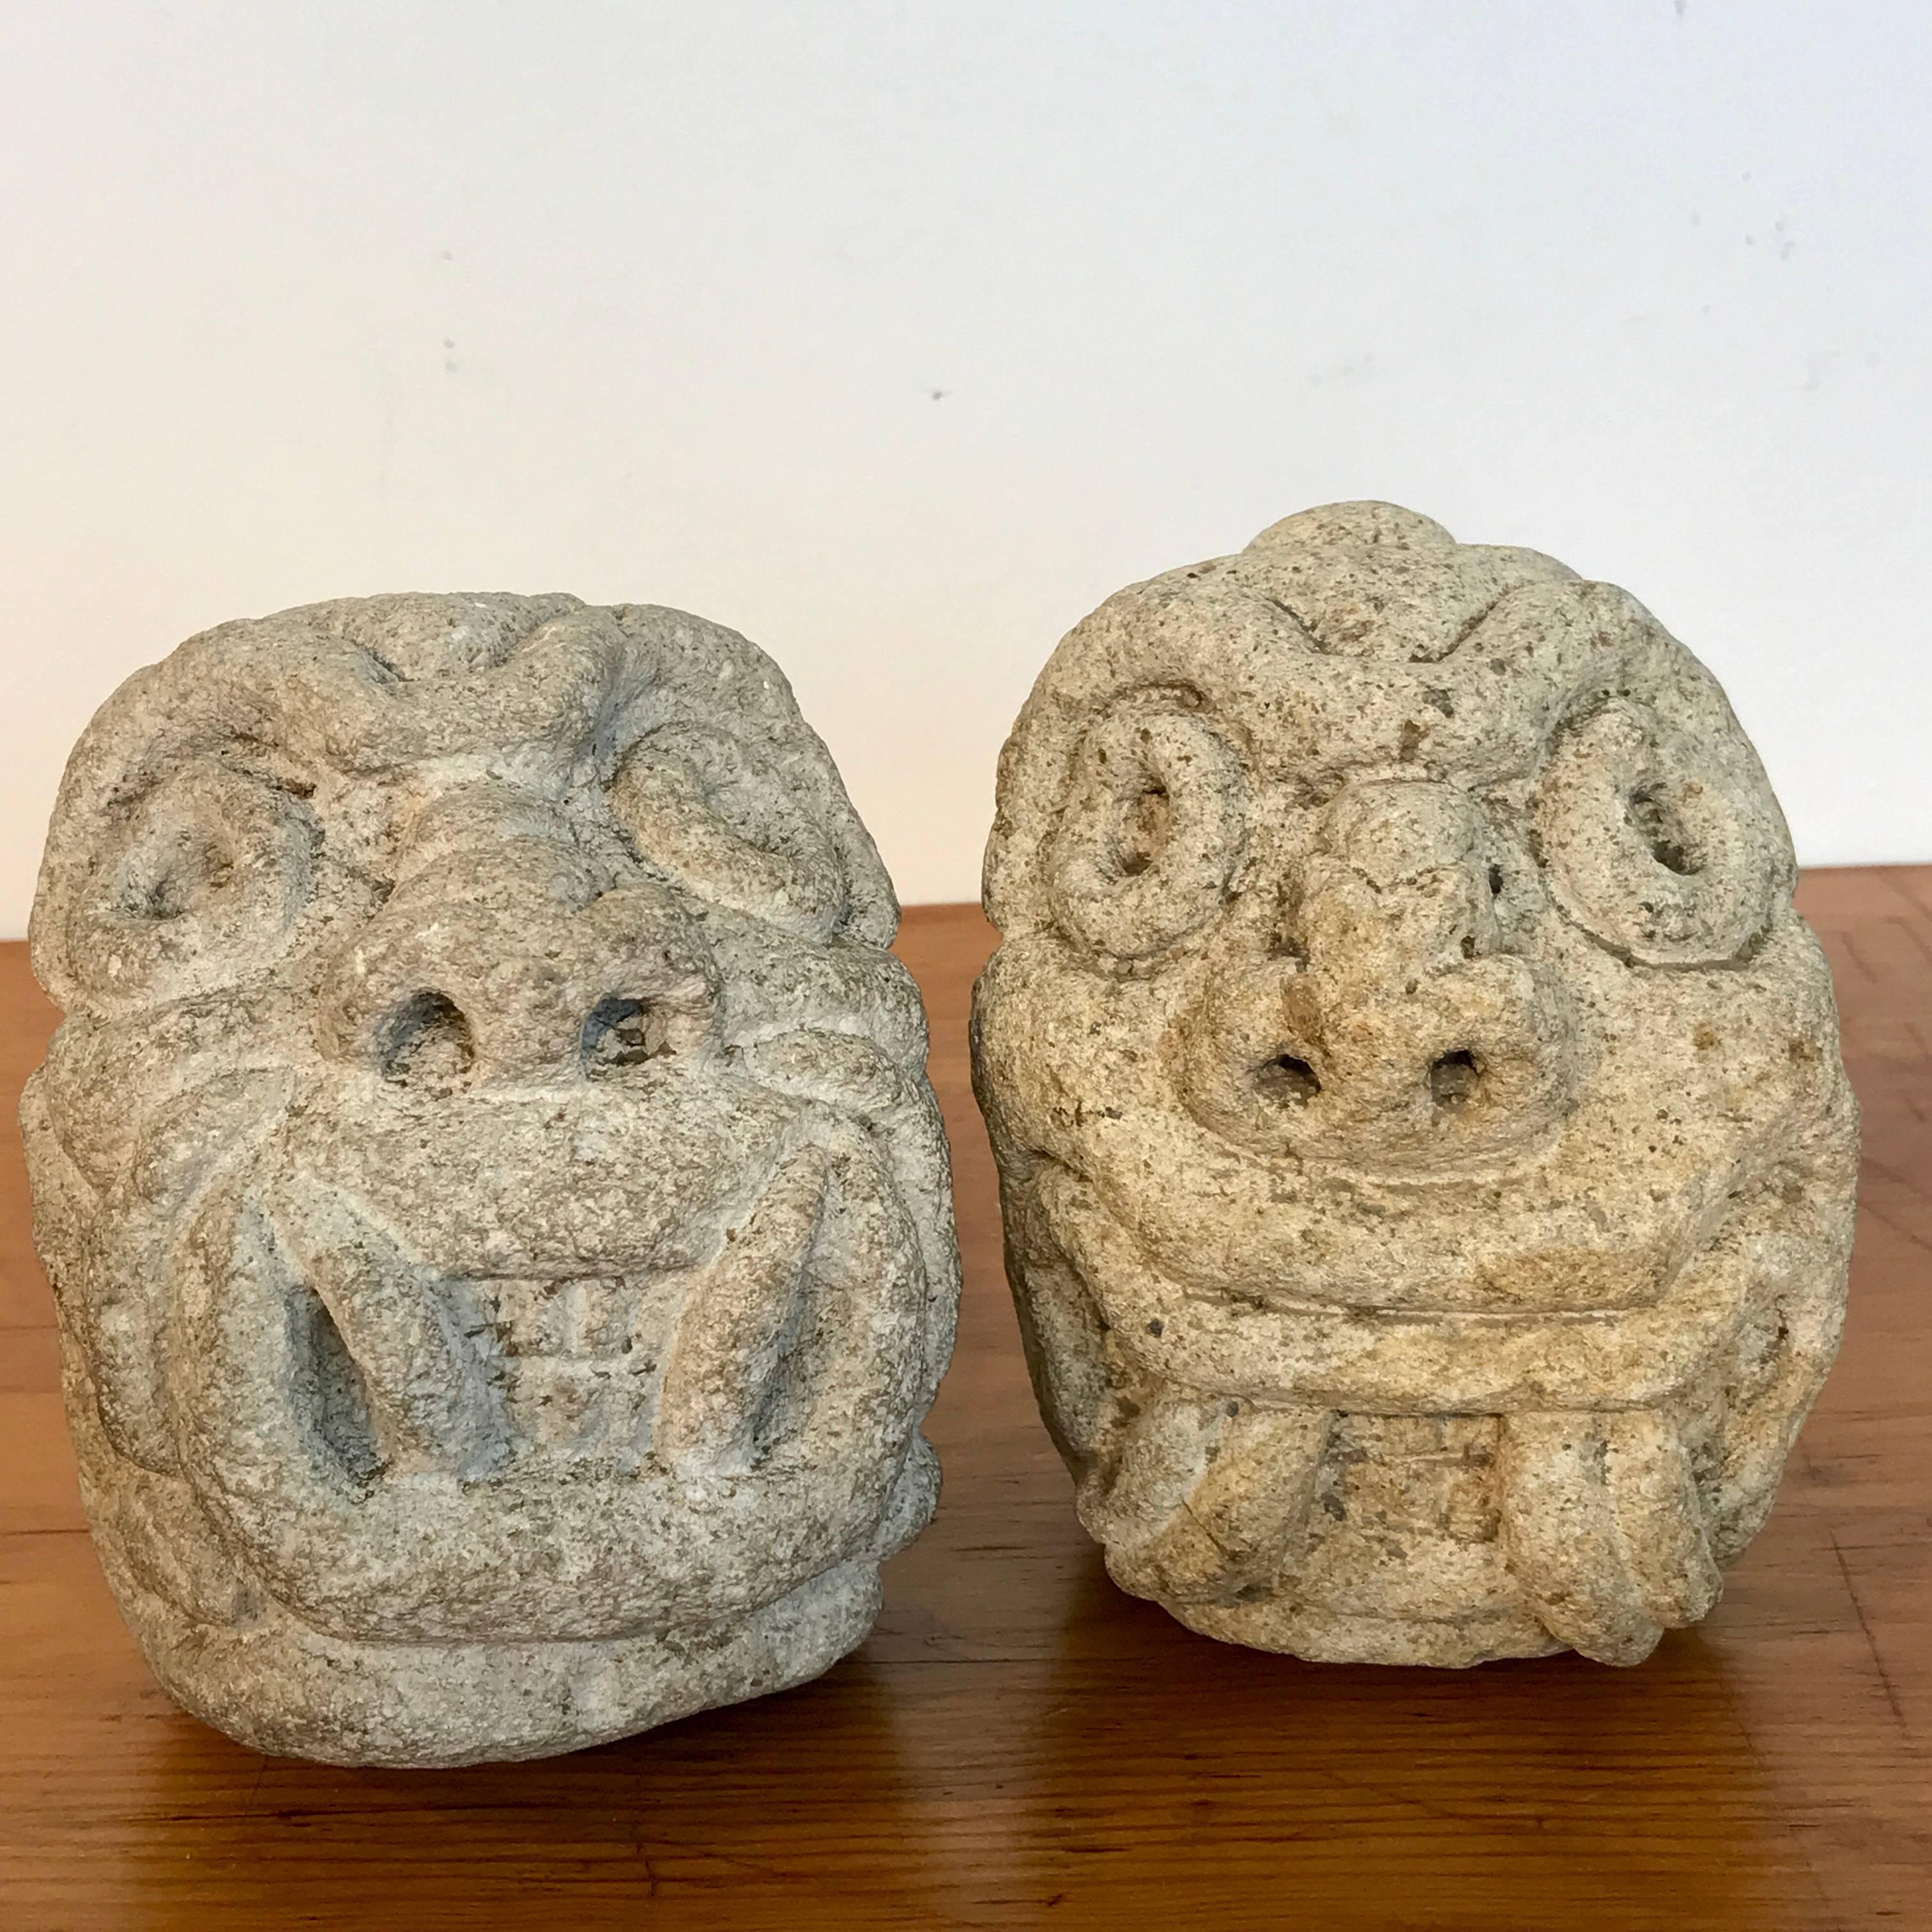 Deux sculptures de divinités mayas en calcaire ou / et éléments architecturaux, du 19e siècle ou plus anciens
Le plus grand mesure 7